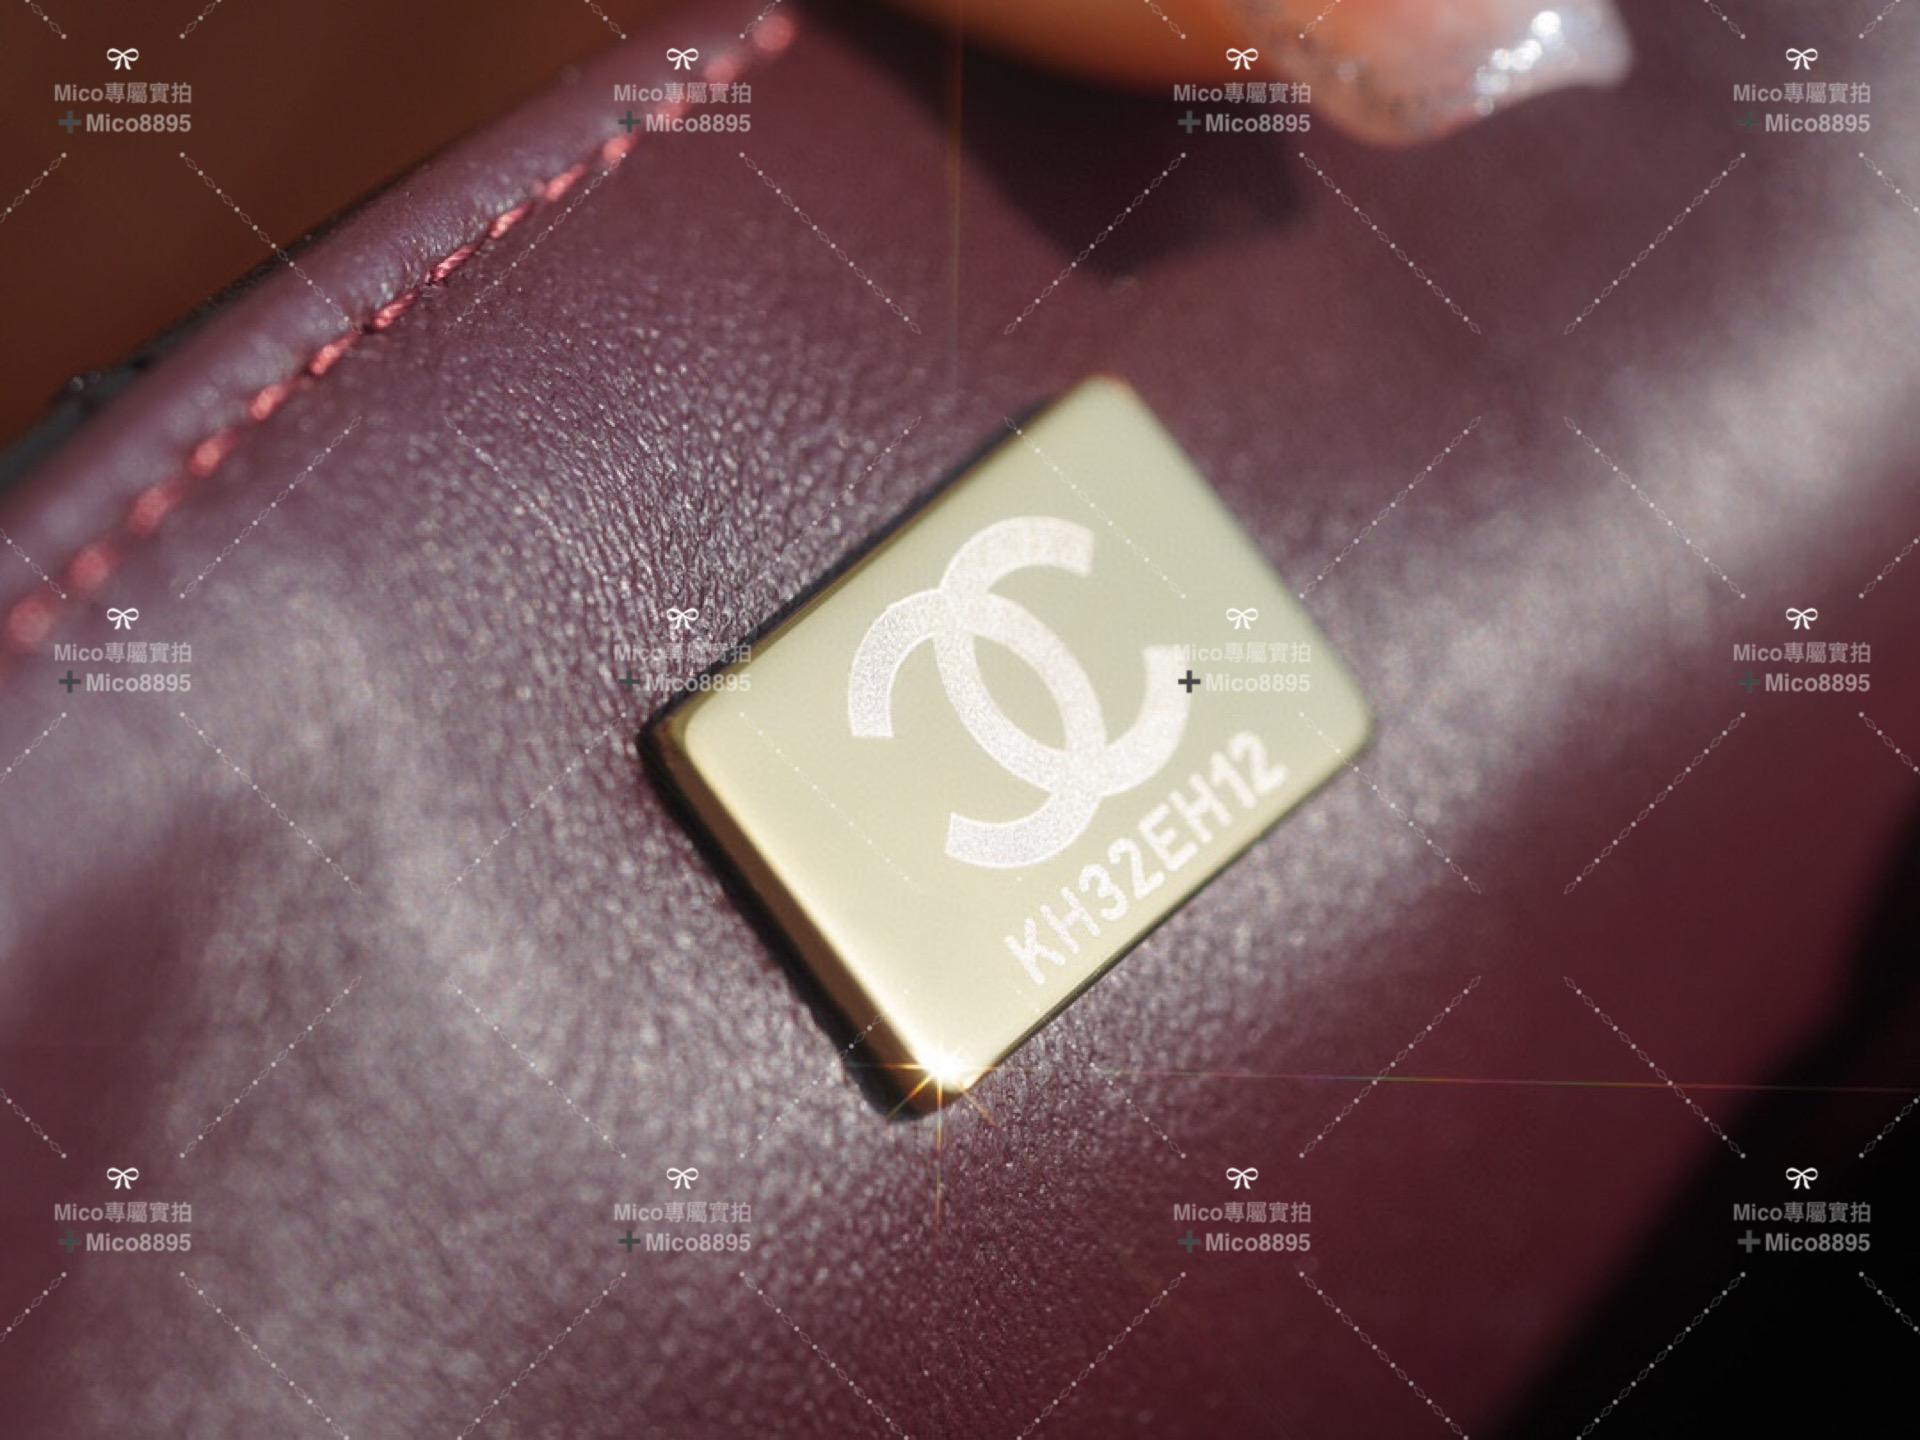 Chanel 黑色羊皮 金釦 內拼酒紅 「Classic Flap」經典口蓋包 miniCF 20cm